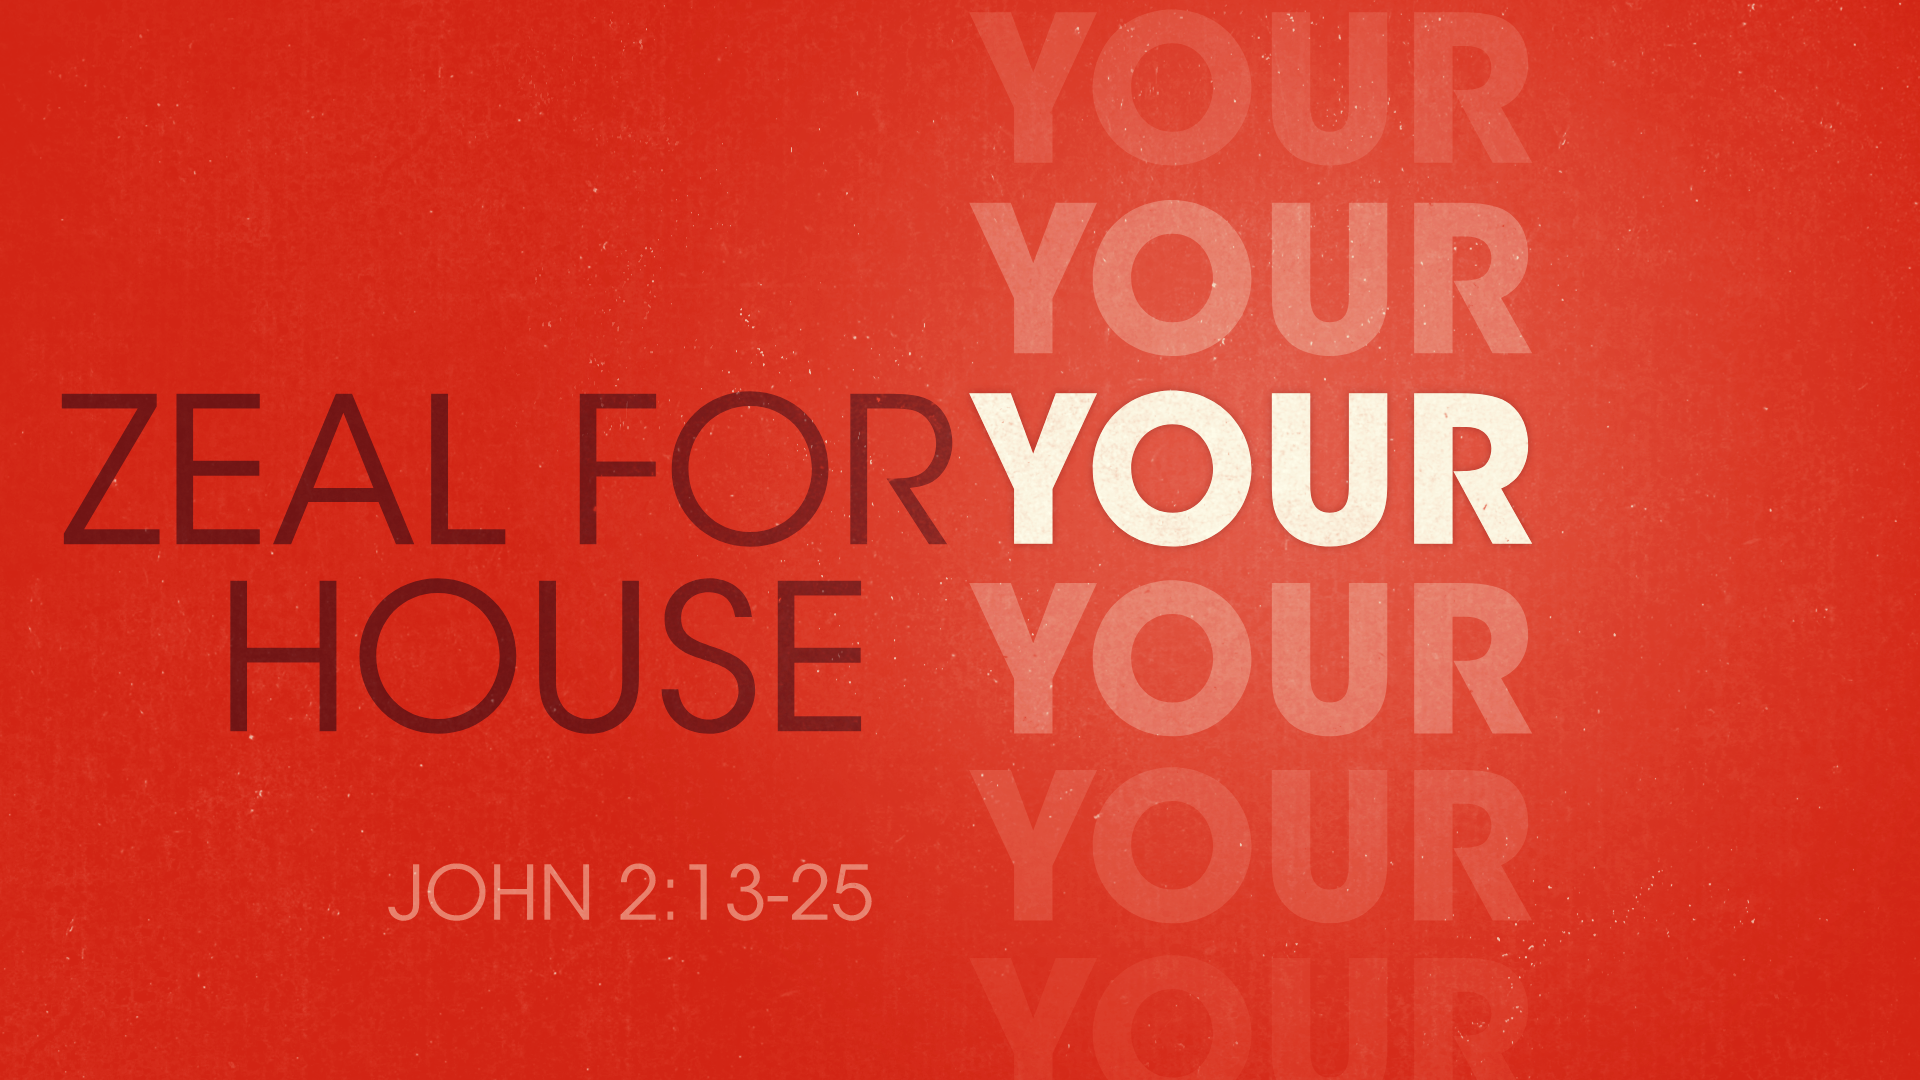 John 2:13-25